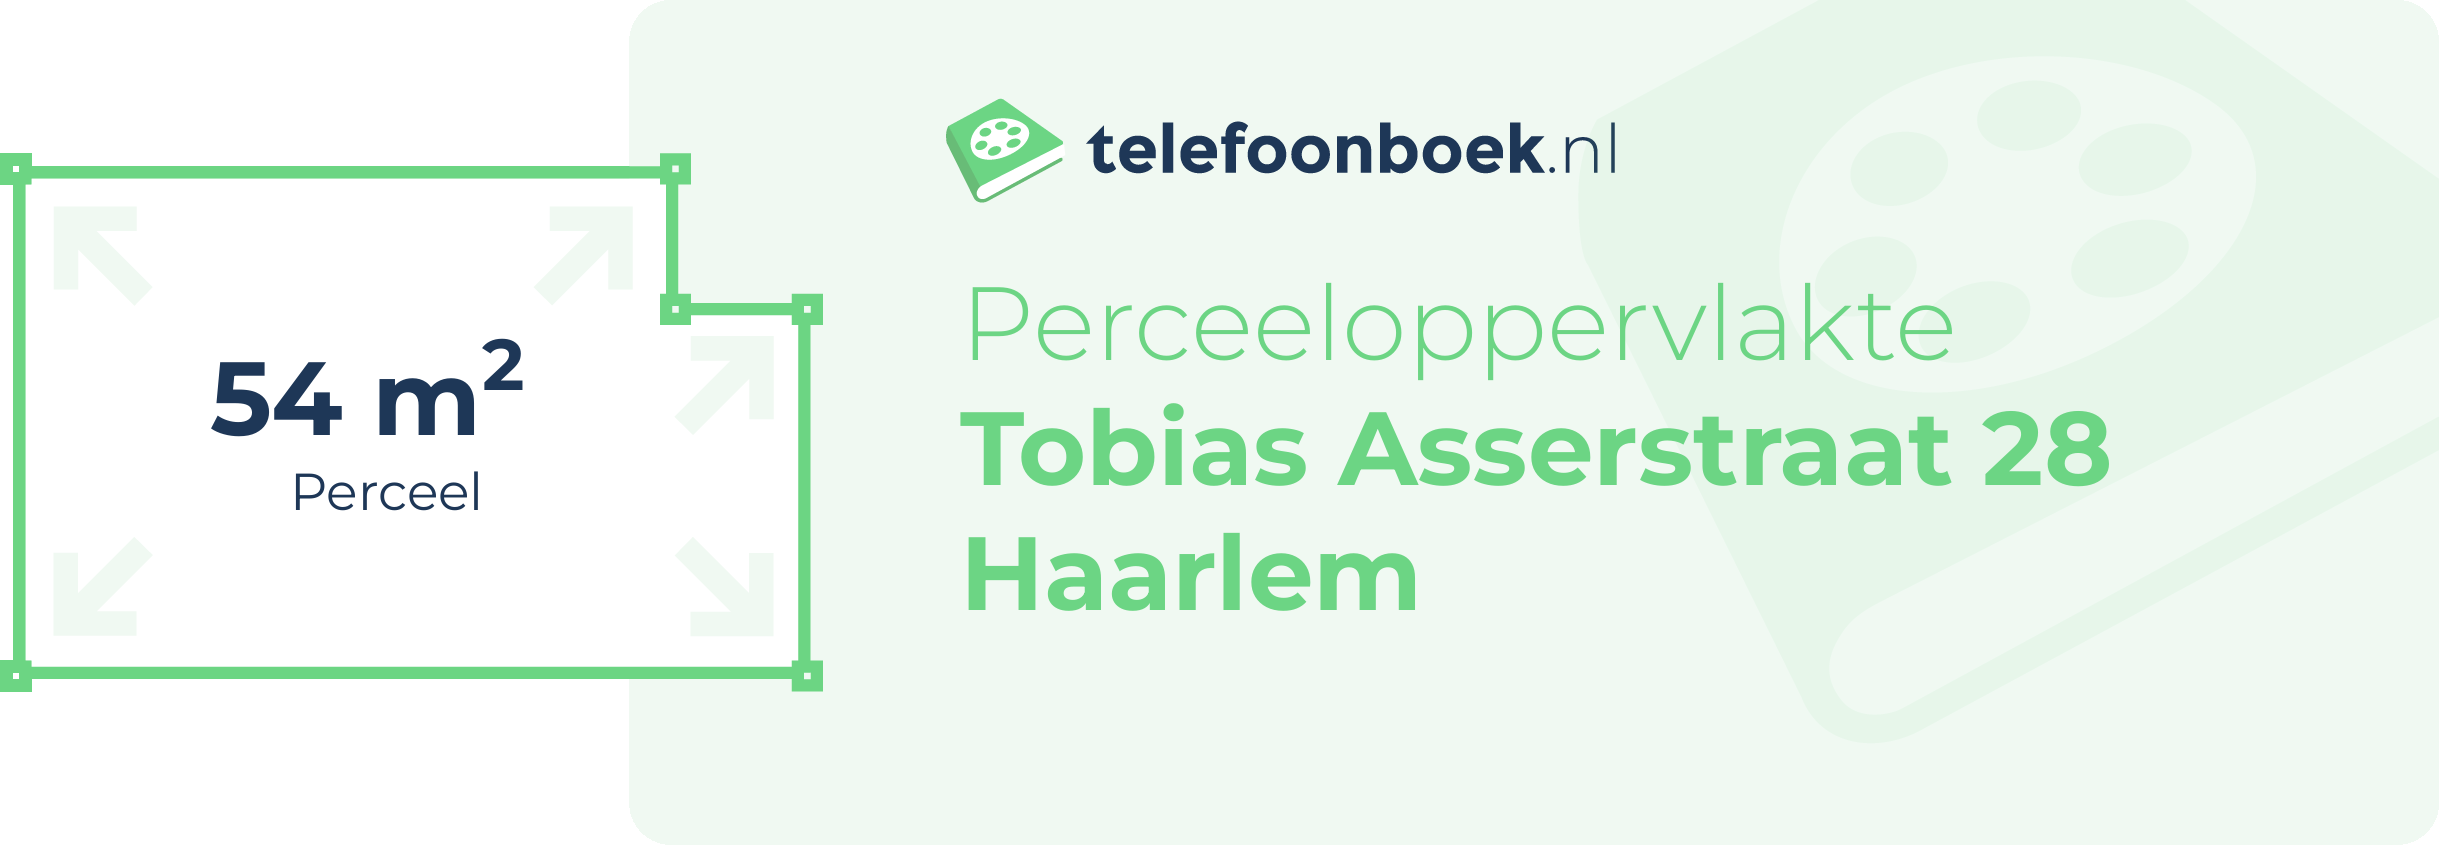 Perceeloppervlakte Tobias Asserstraat 28 Haarlem